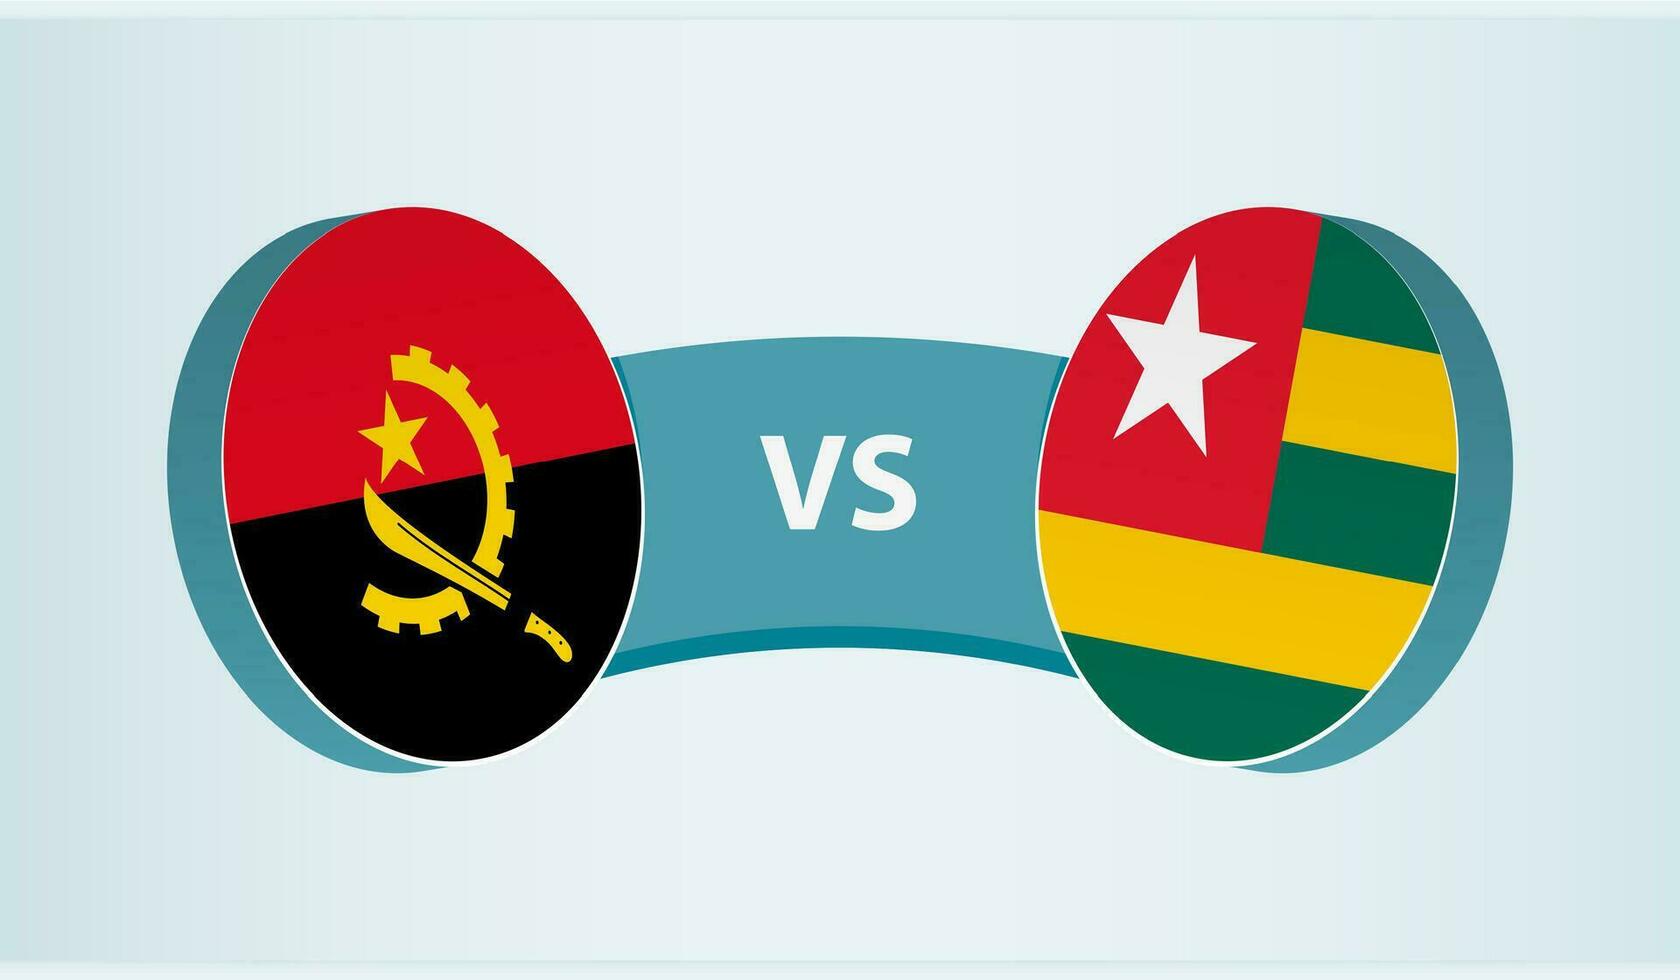 angola versus ir, equipo Deportes competencia concepto. vector